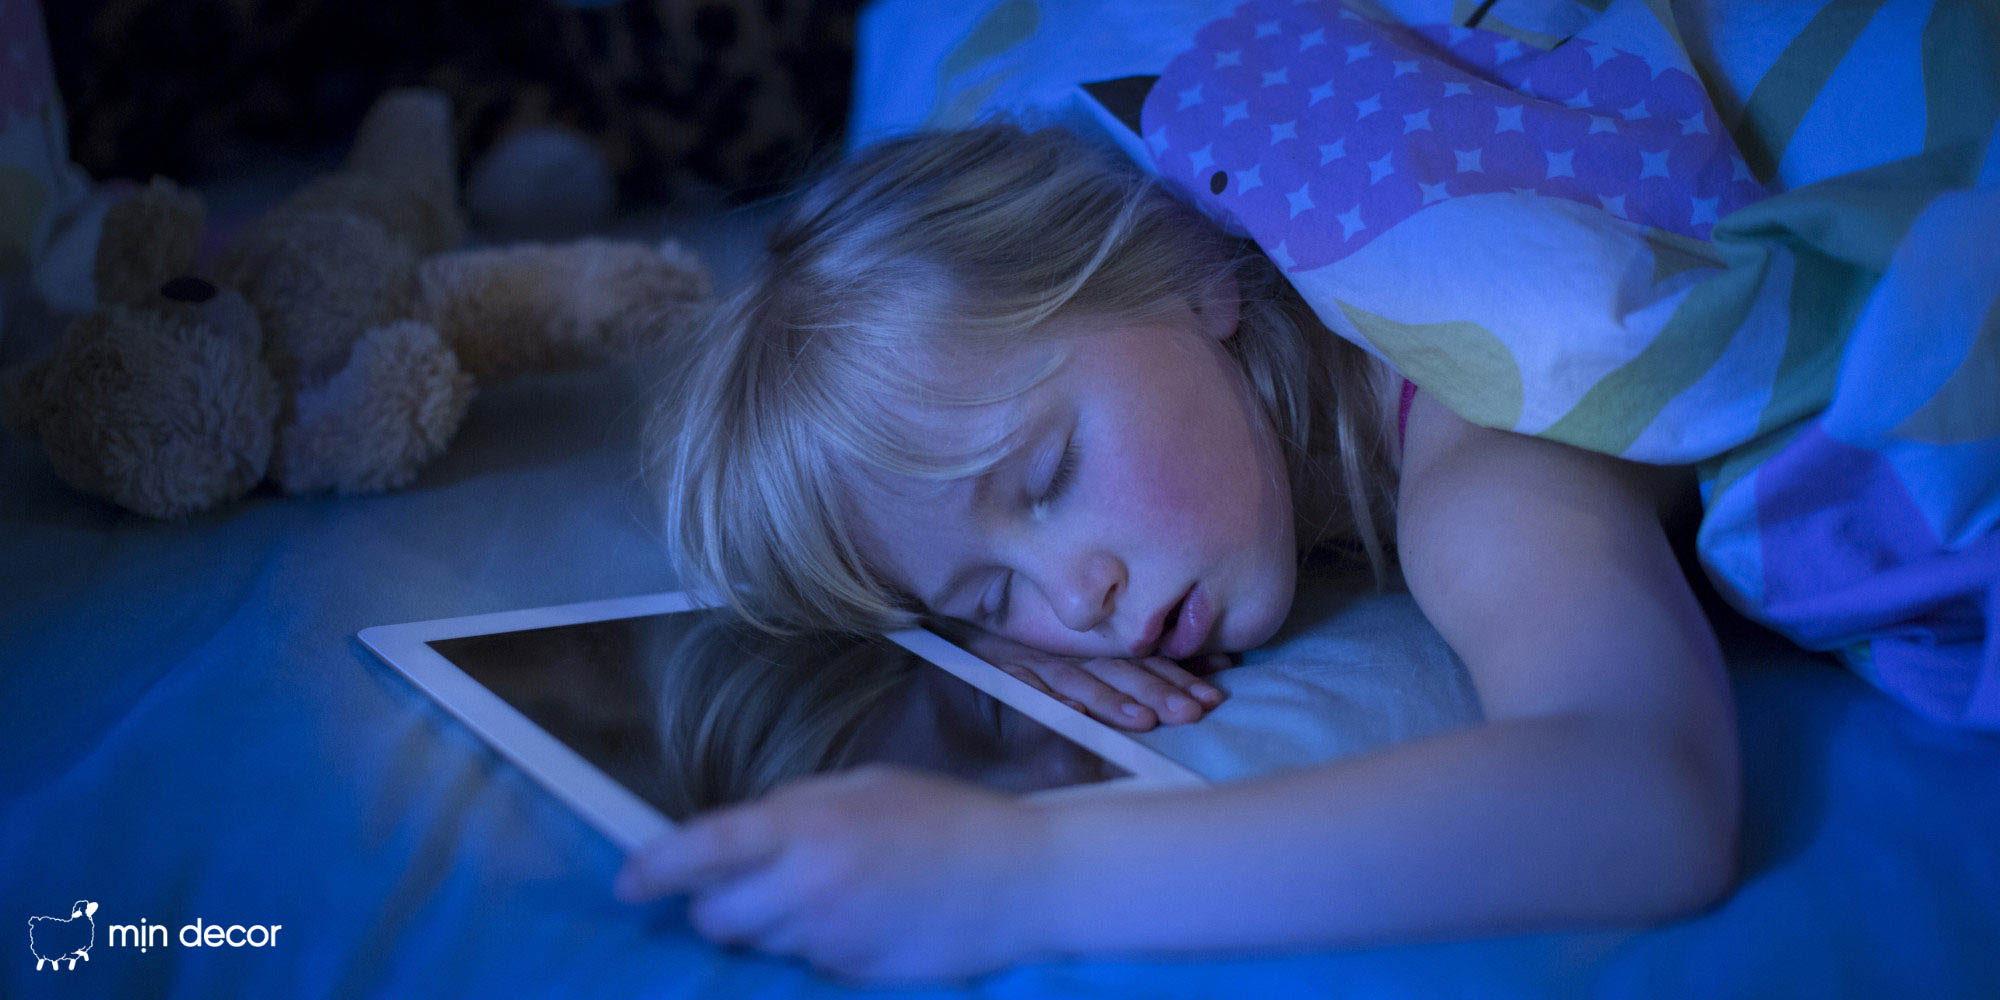 Sử dụng thiết bị điện tử trước khi đi ngủ ảnh hưởng tới chất lượng giấc ngủ của trẻ